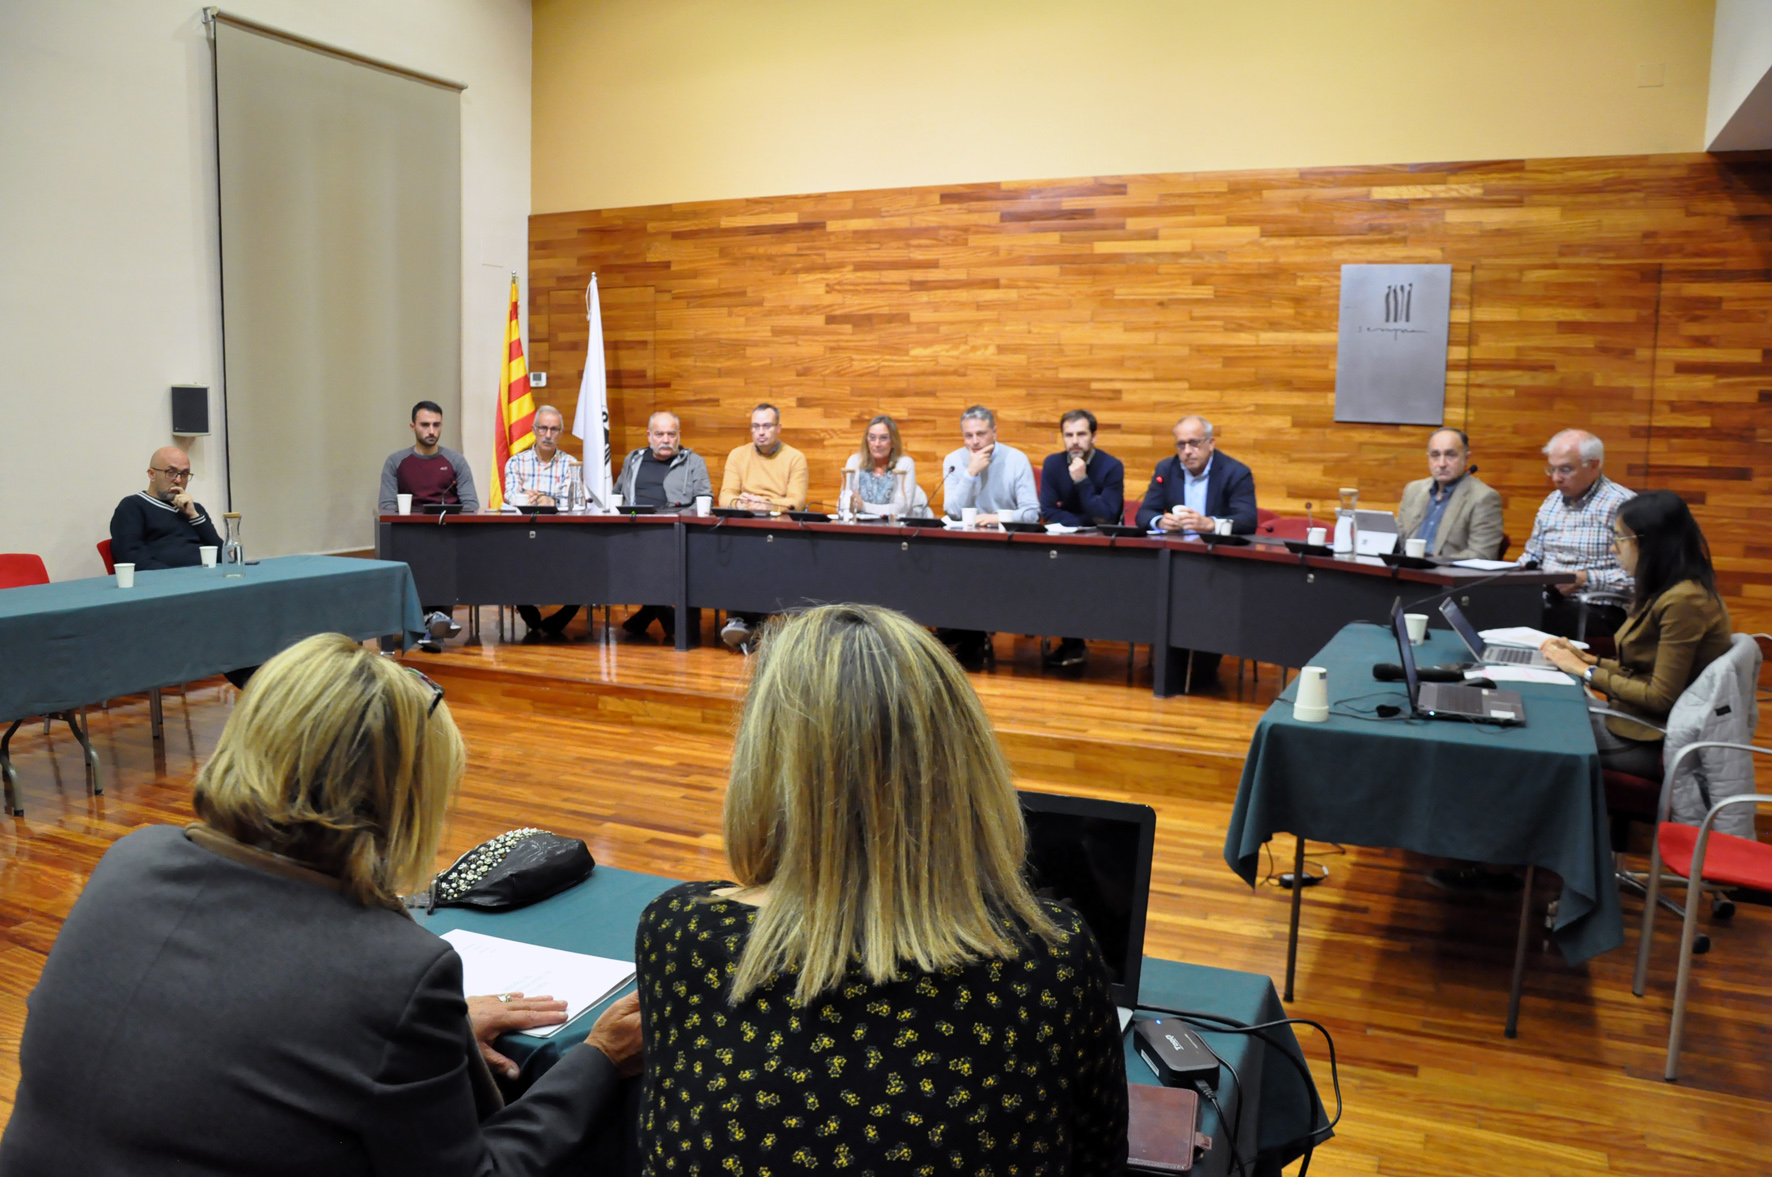 Imatge dels batlles participants i del president, Joaquim Colomer, al Consell d'alcaldes i alcaldesses del Ripollès del 8 de novembre de 2022, celebrat a l'Ajuntament de Sant Joan de les Abadesses